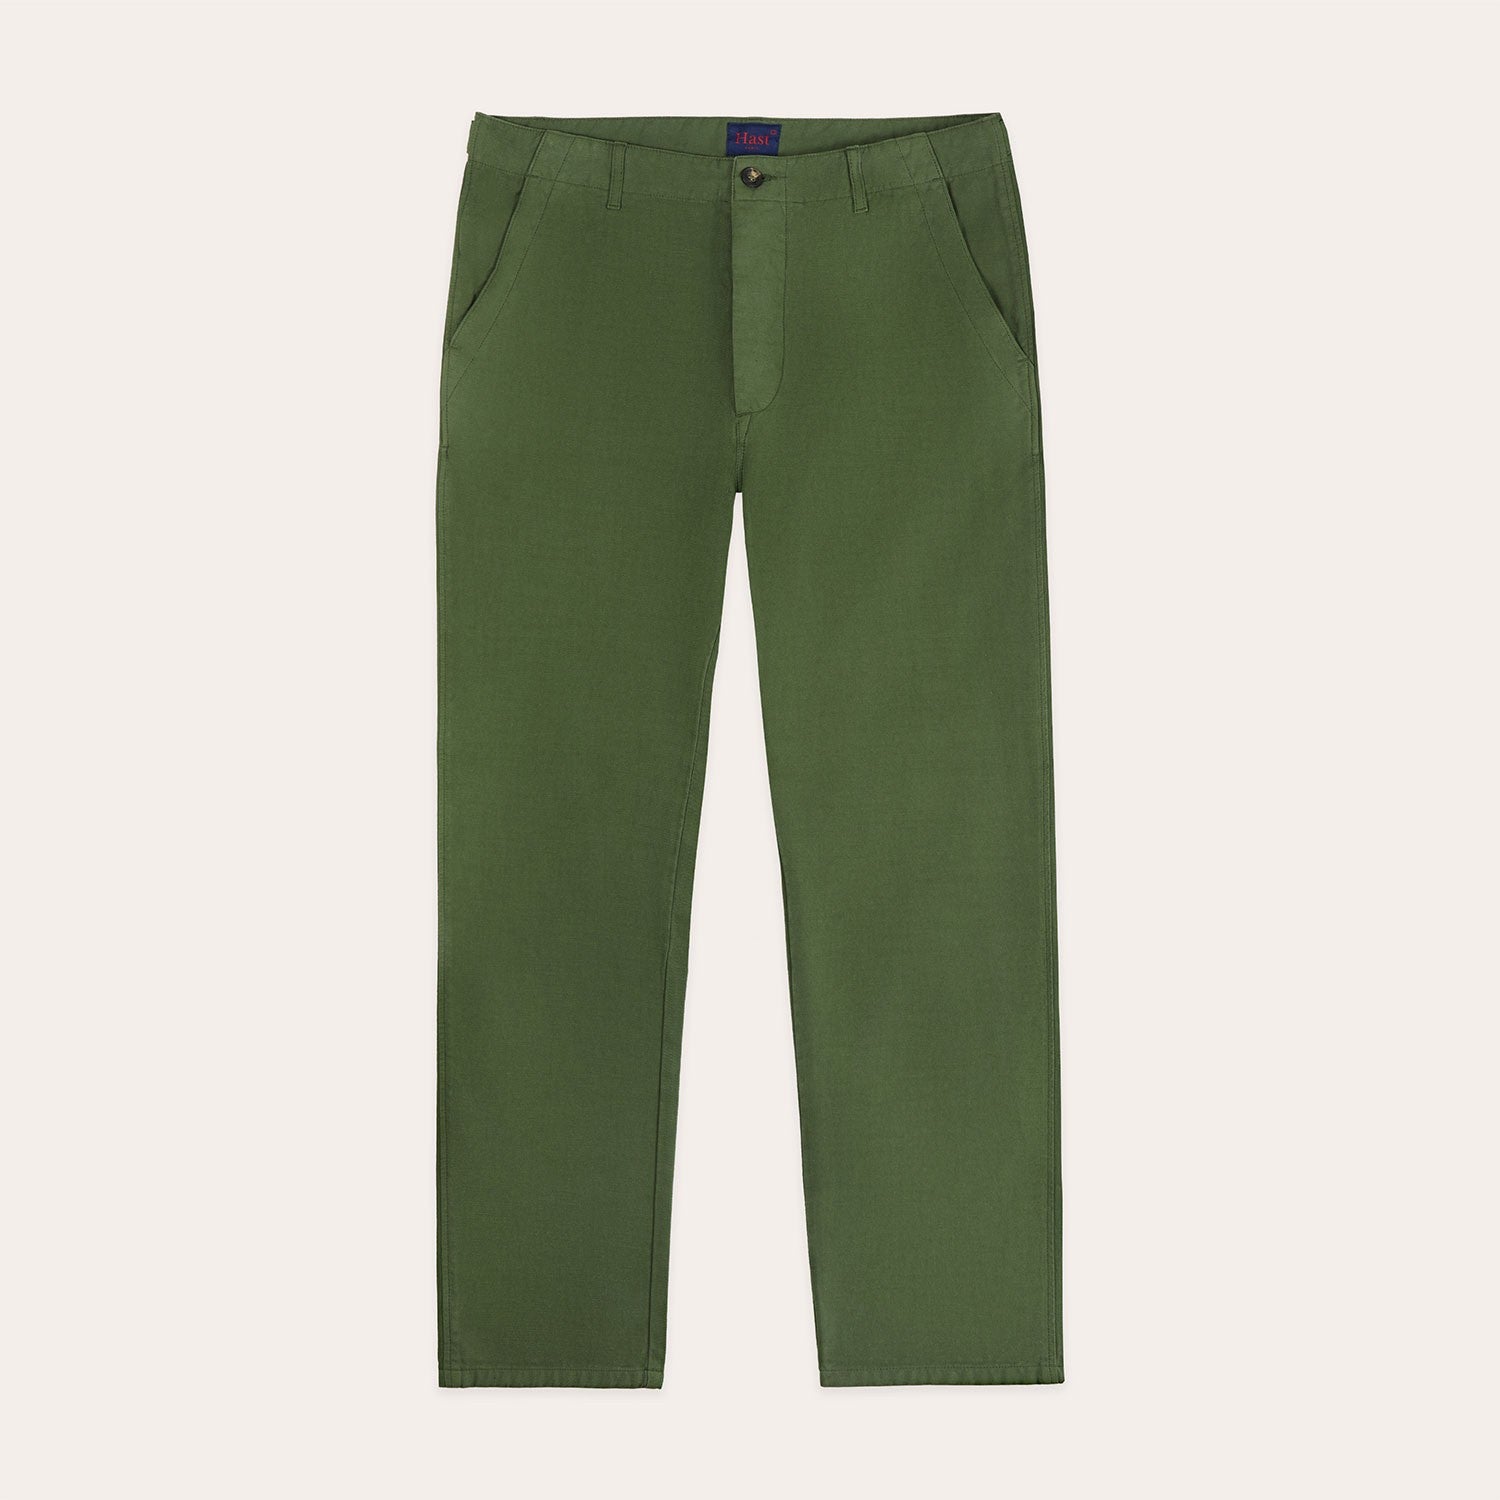 Pantalon militaire vert forêt